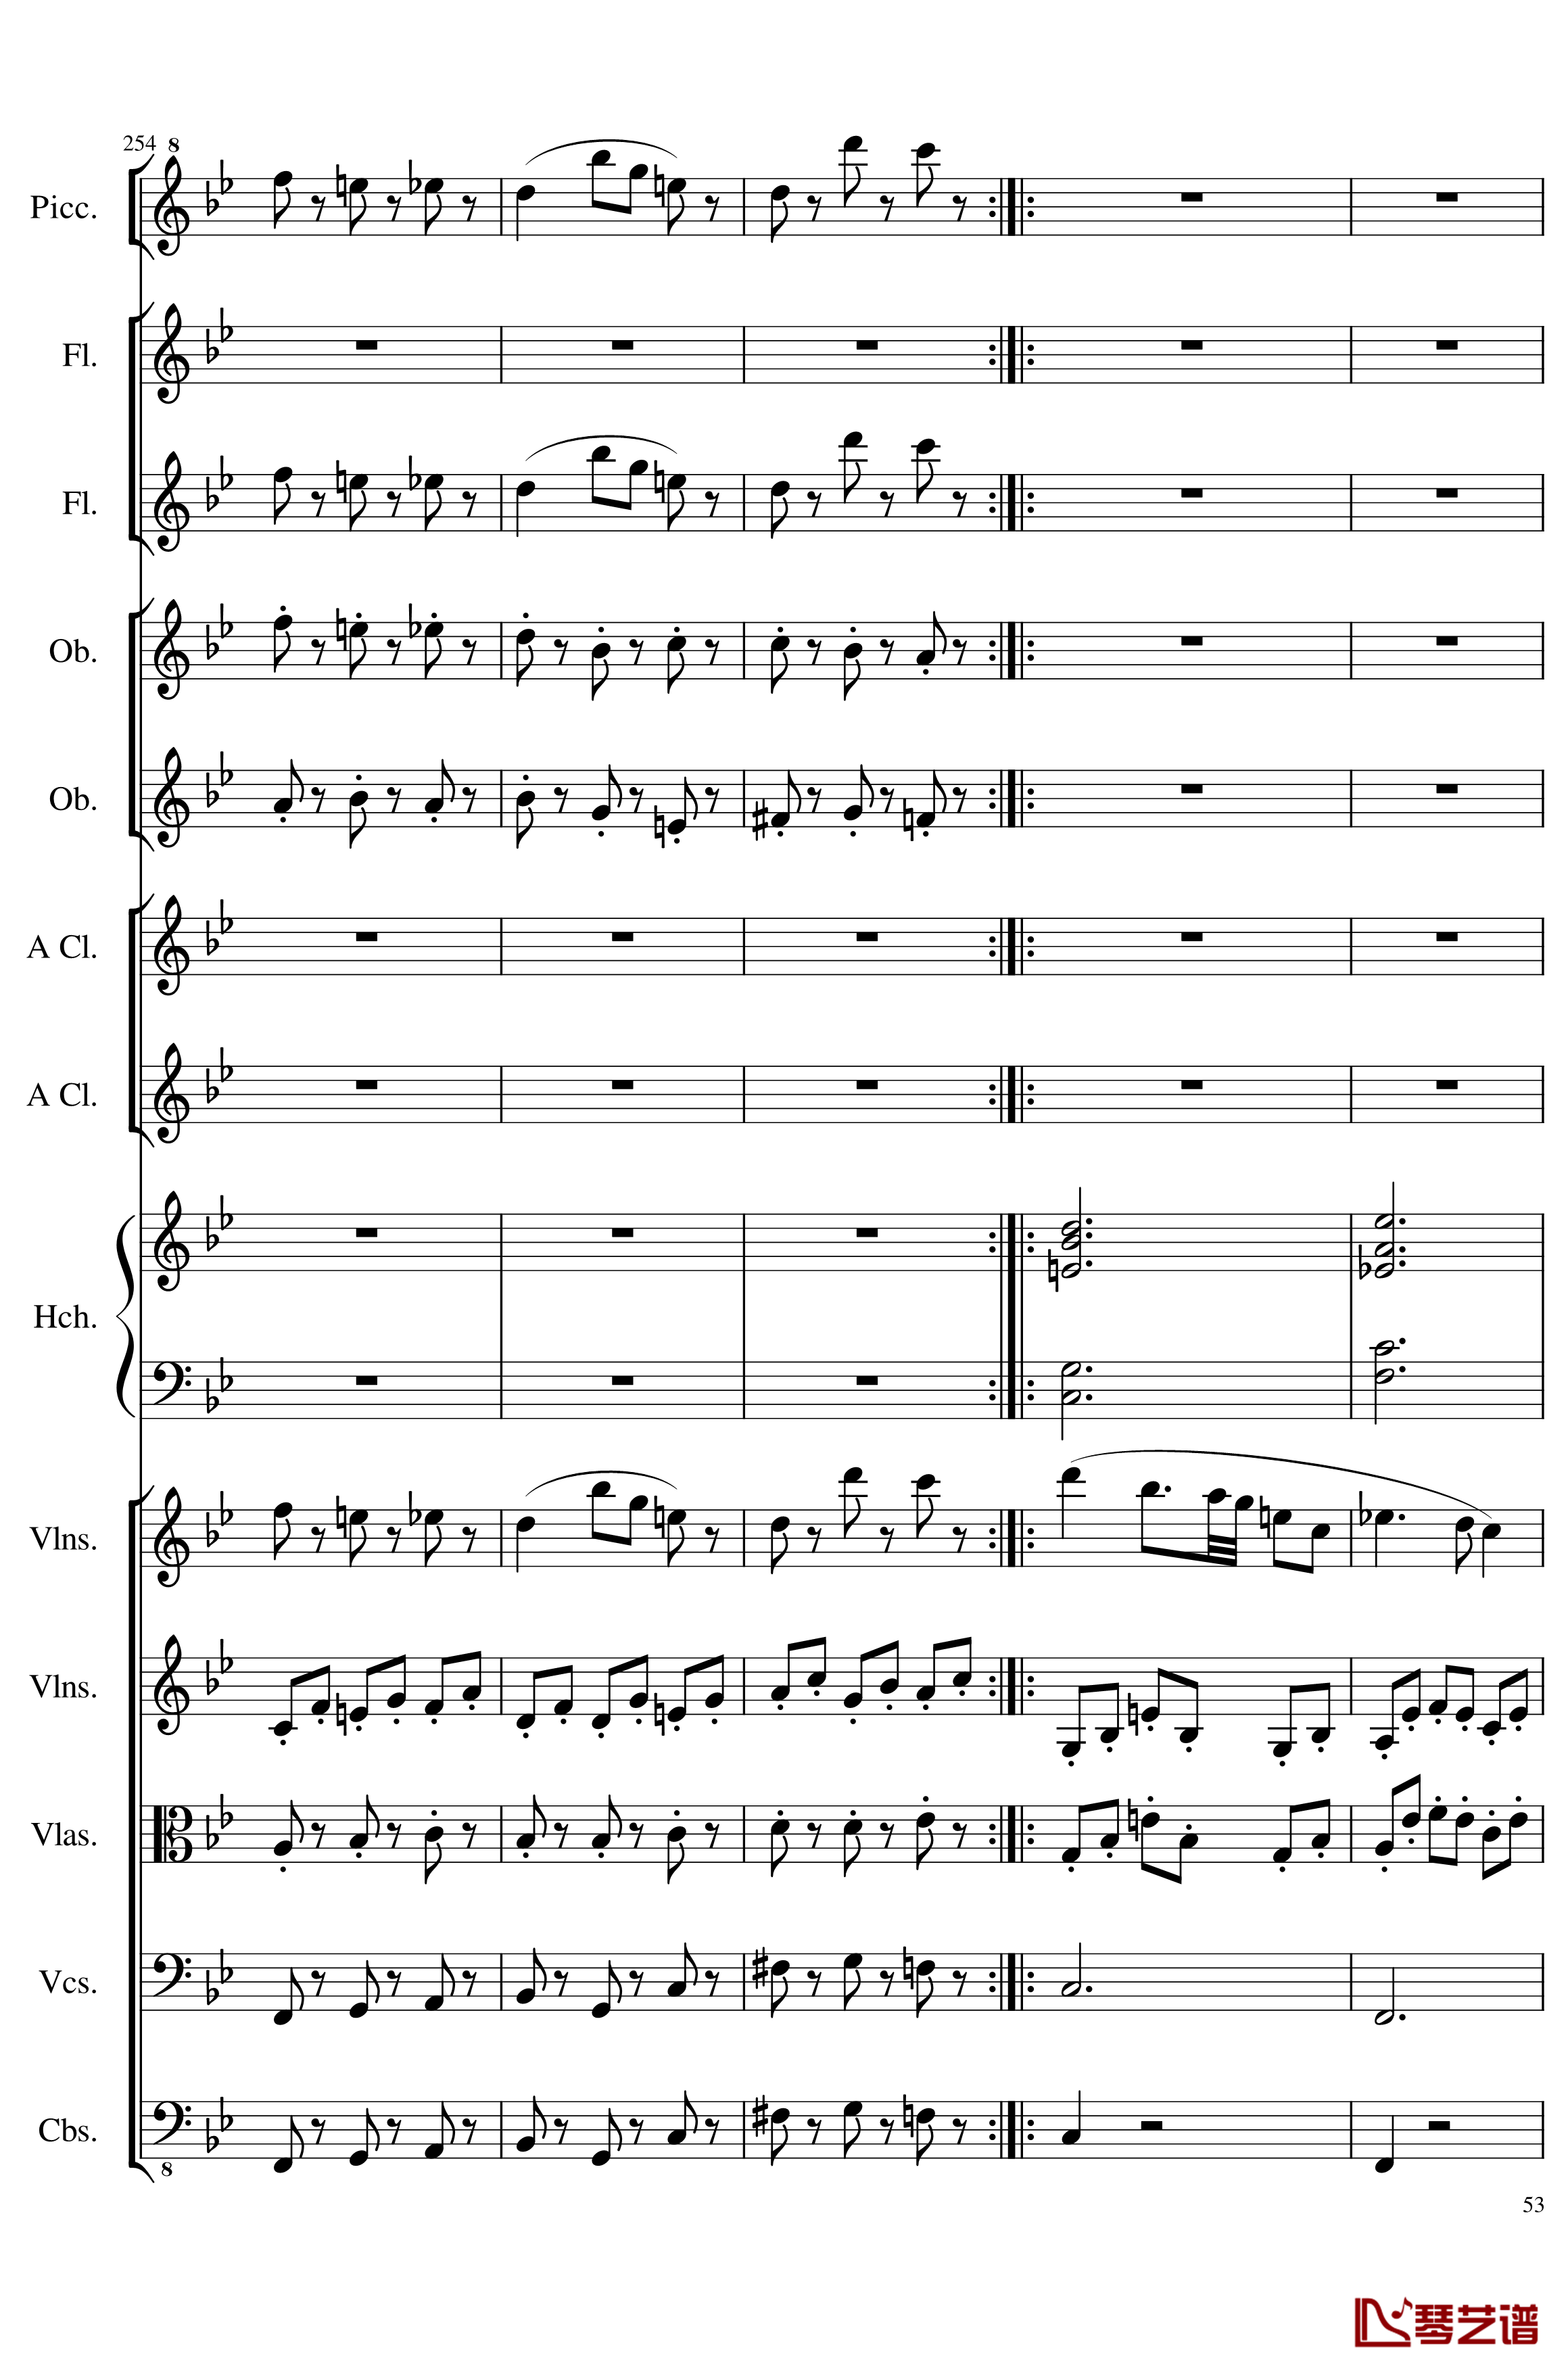 7 Contredanses No.1-7, Op.124钢琴谱-7首乡村舞曲，第一至第七，作品124-一个球53